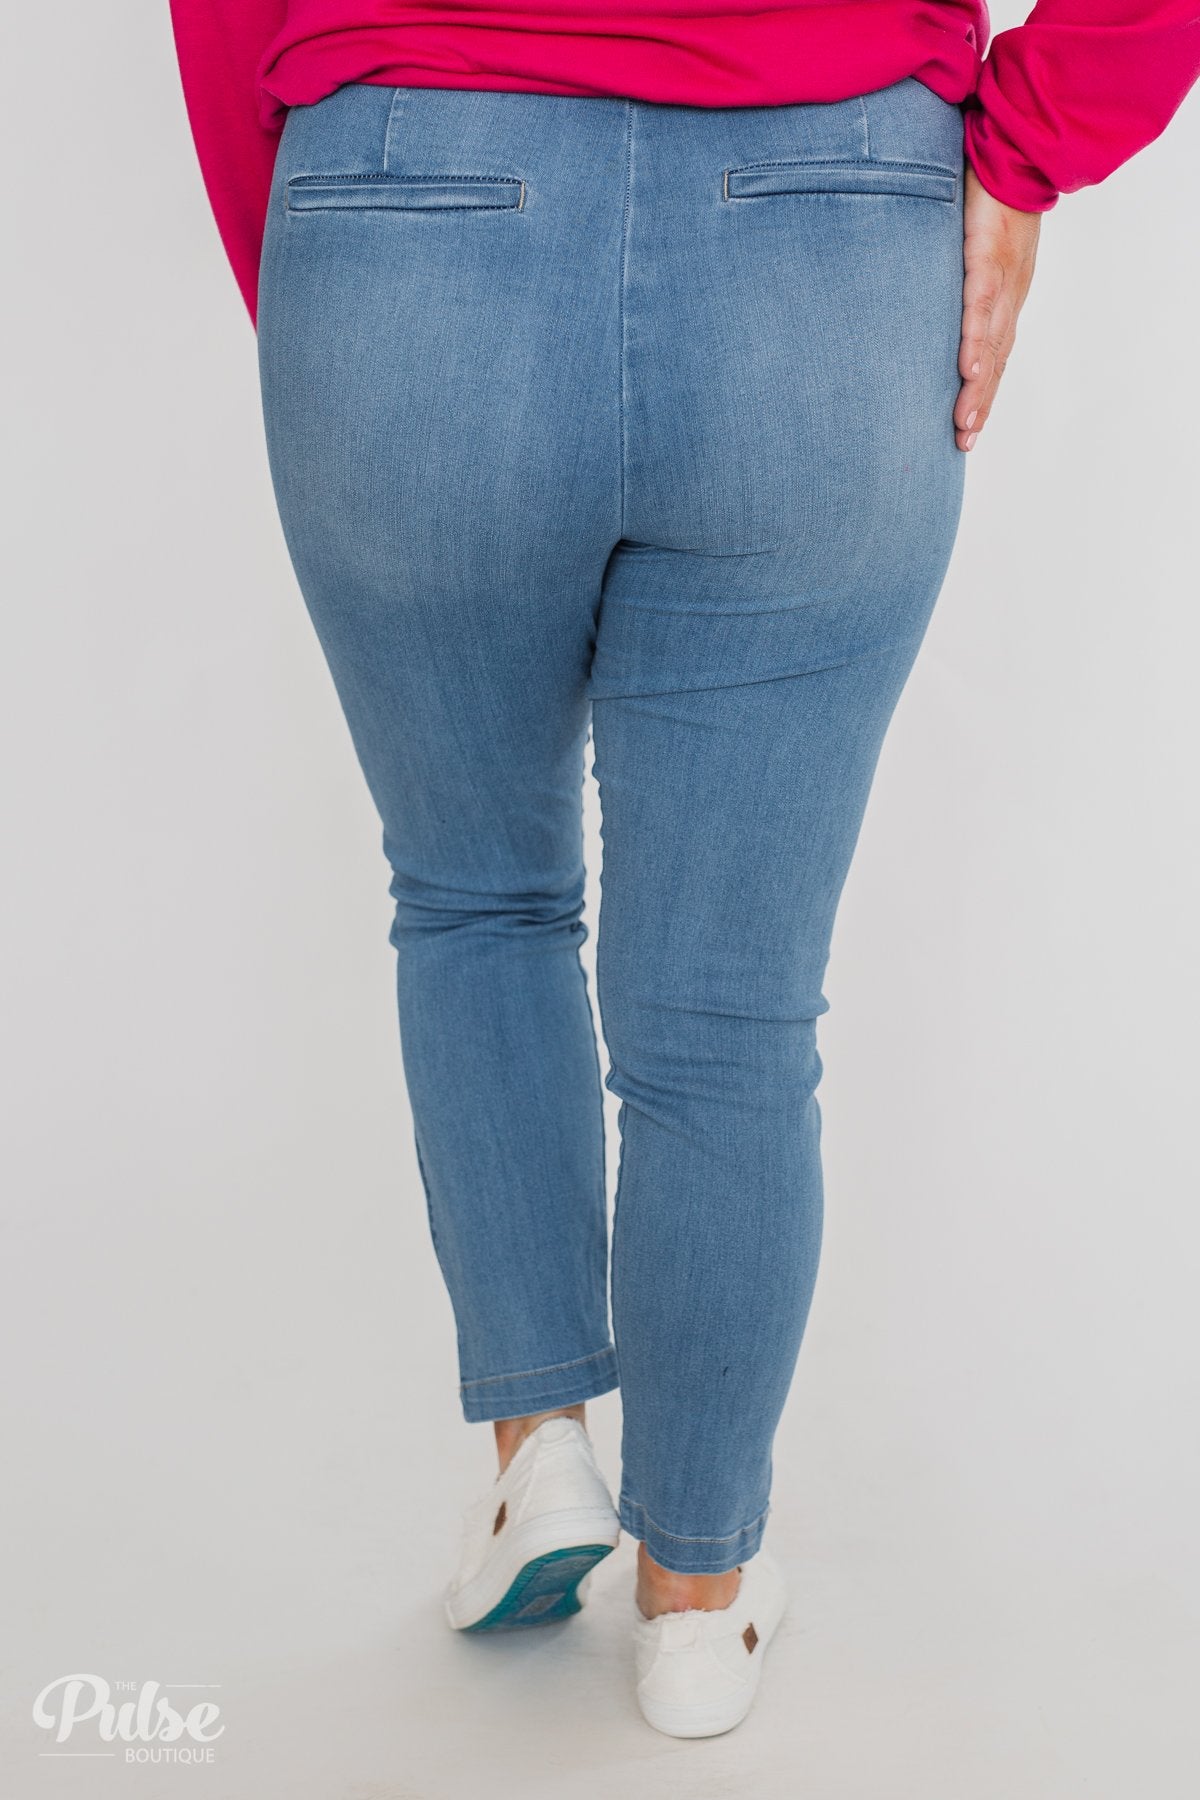 Celebrity Pink Belt Jeans- Kingston Wash